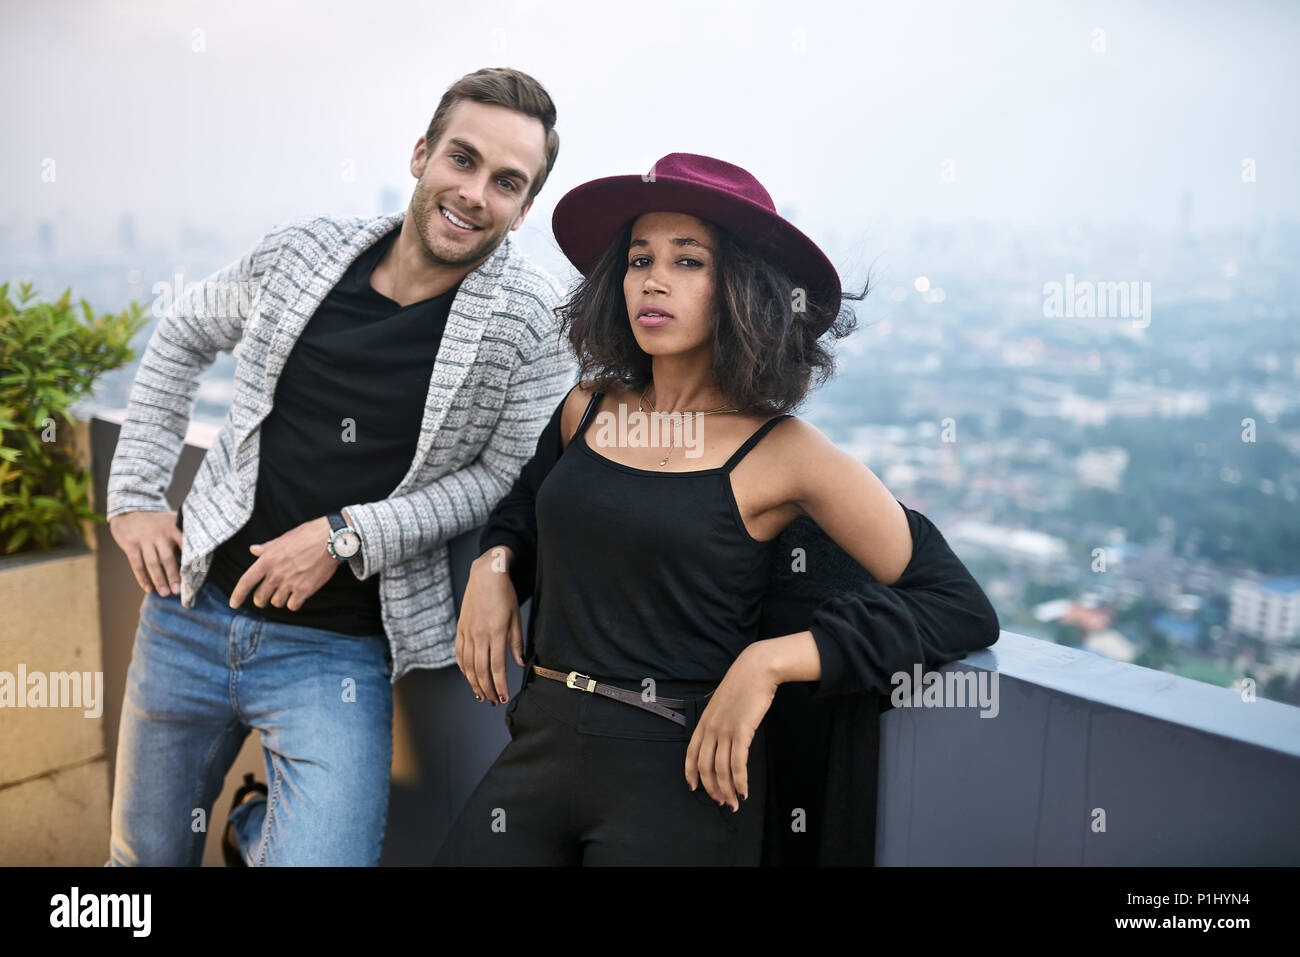 Beautiful interracial couple on balcony Stock Photo